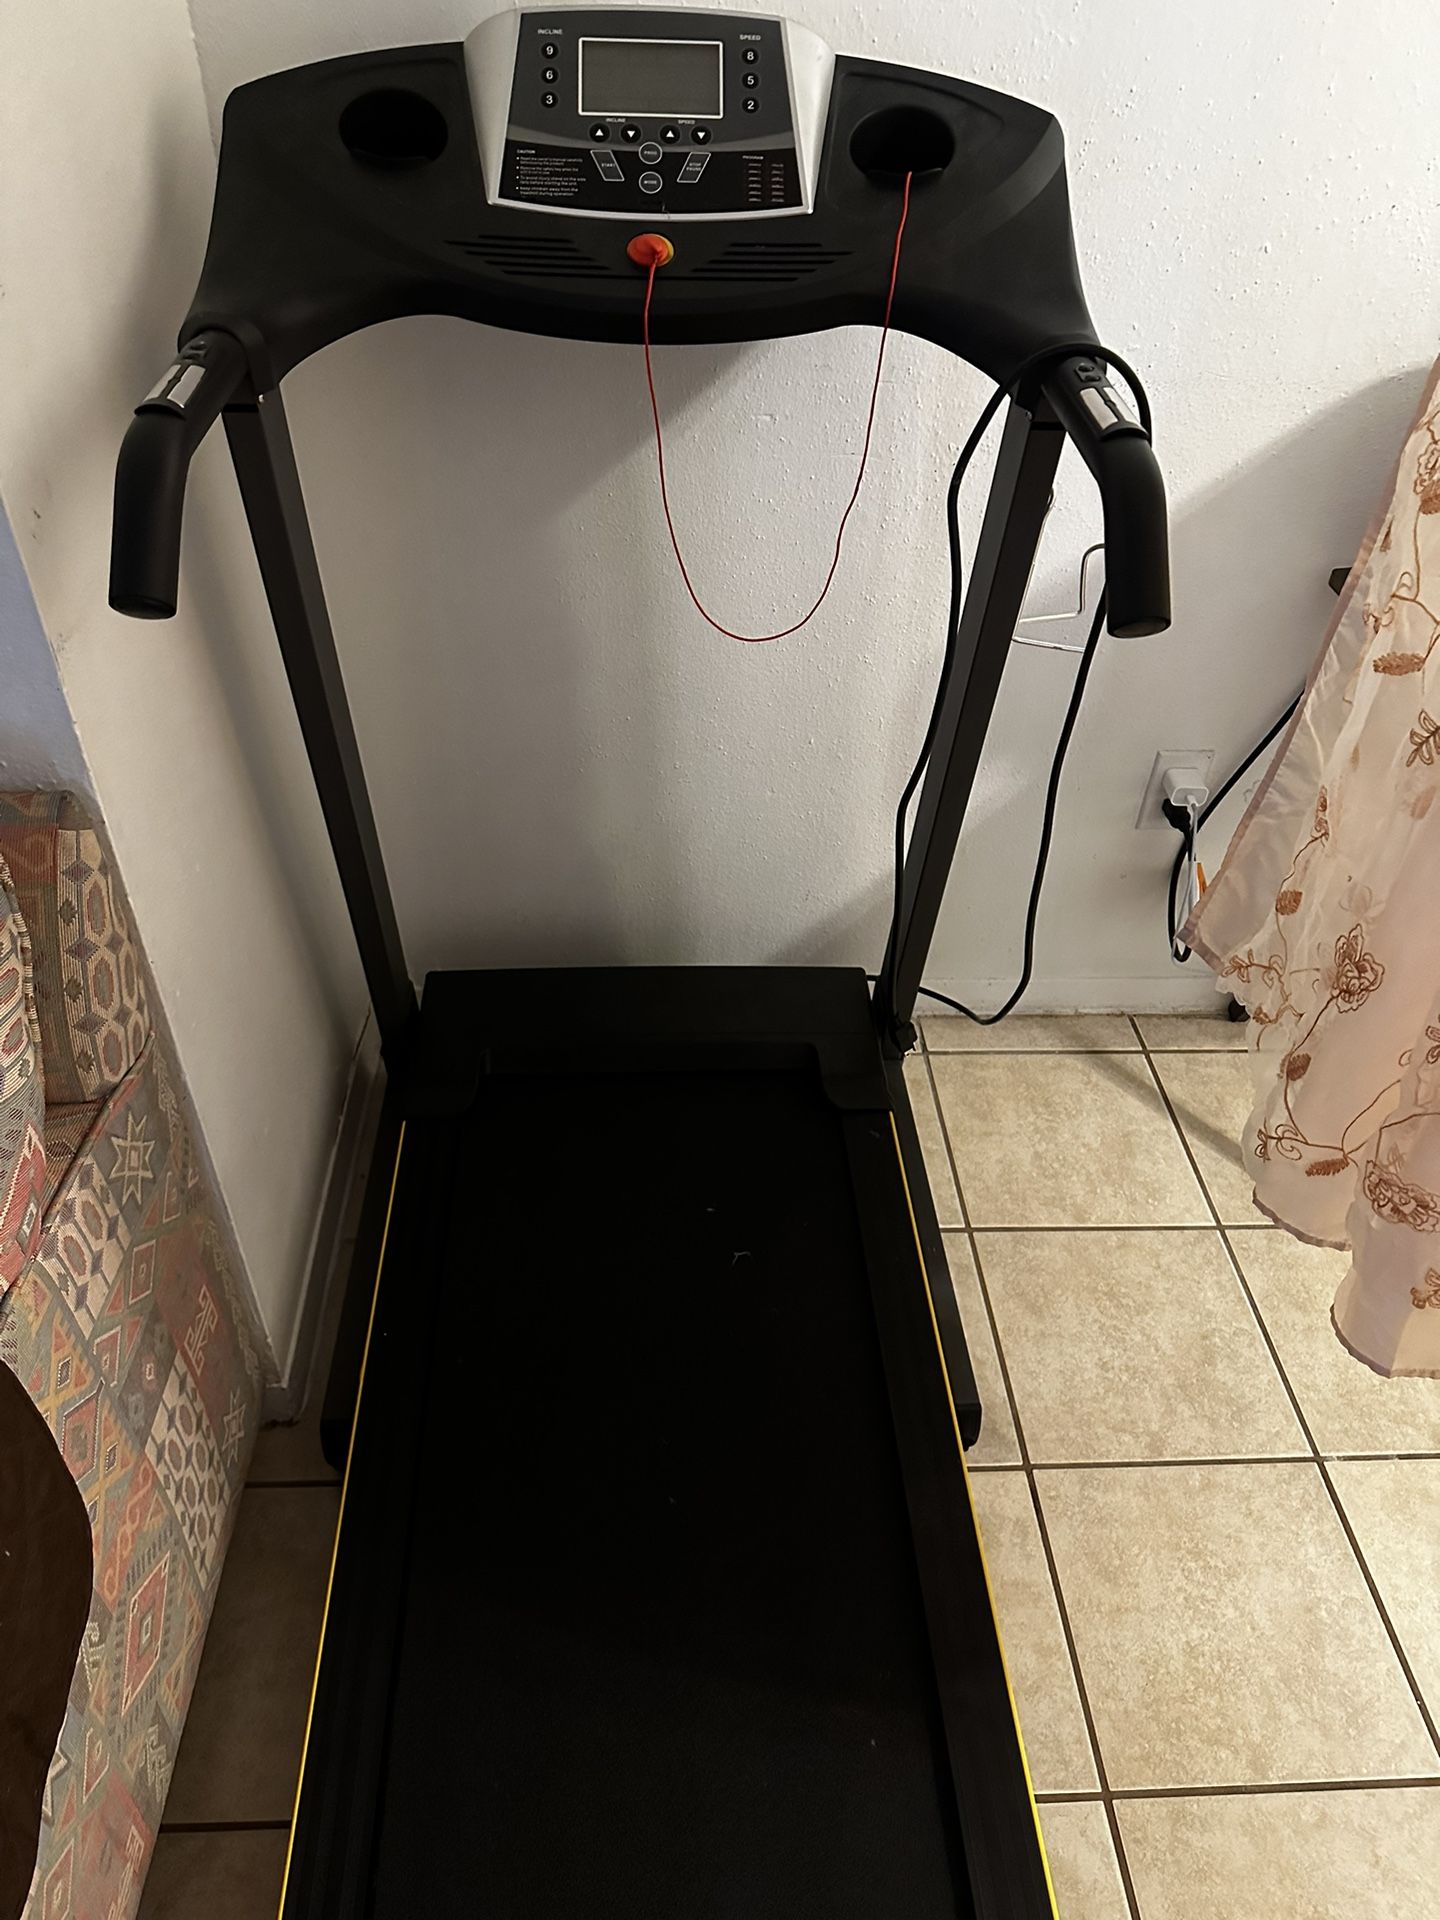 Treadmill 2.5hp